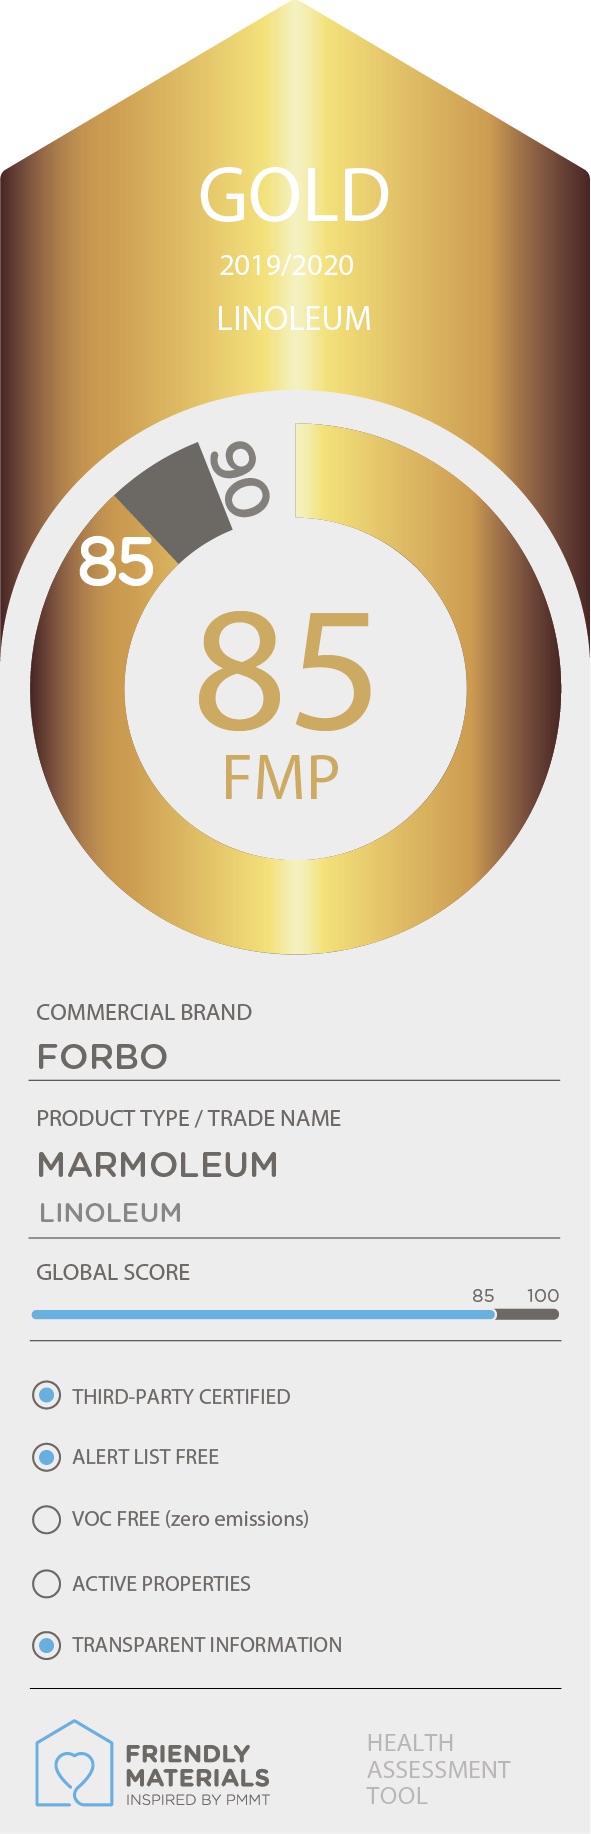 Marmoleum gold 85